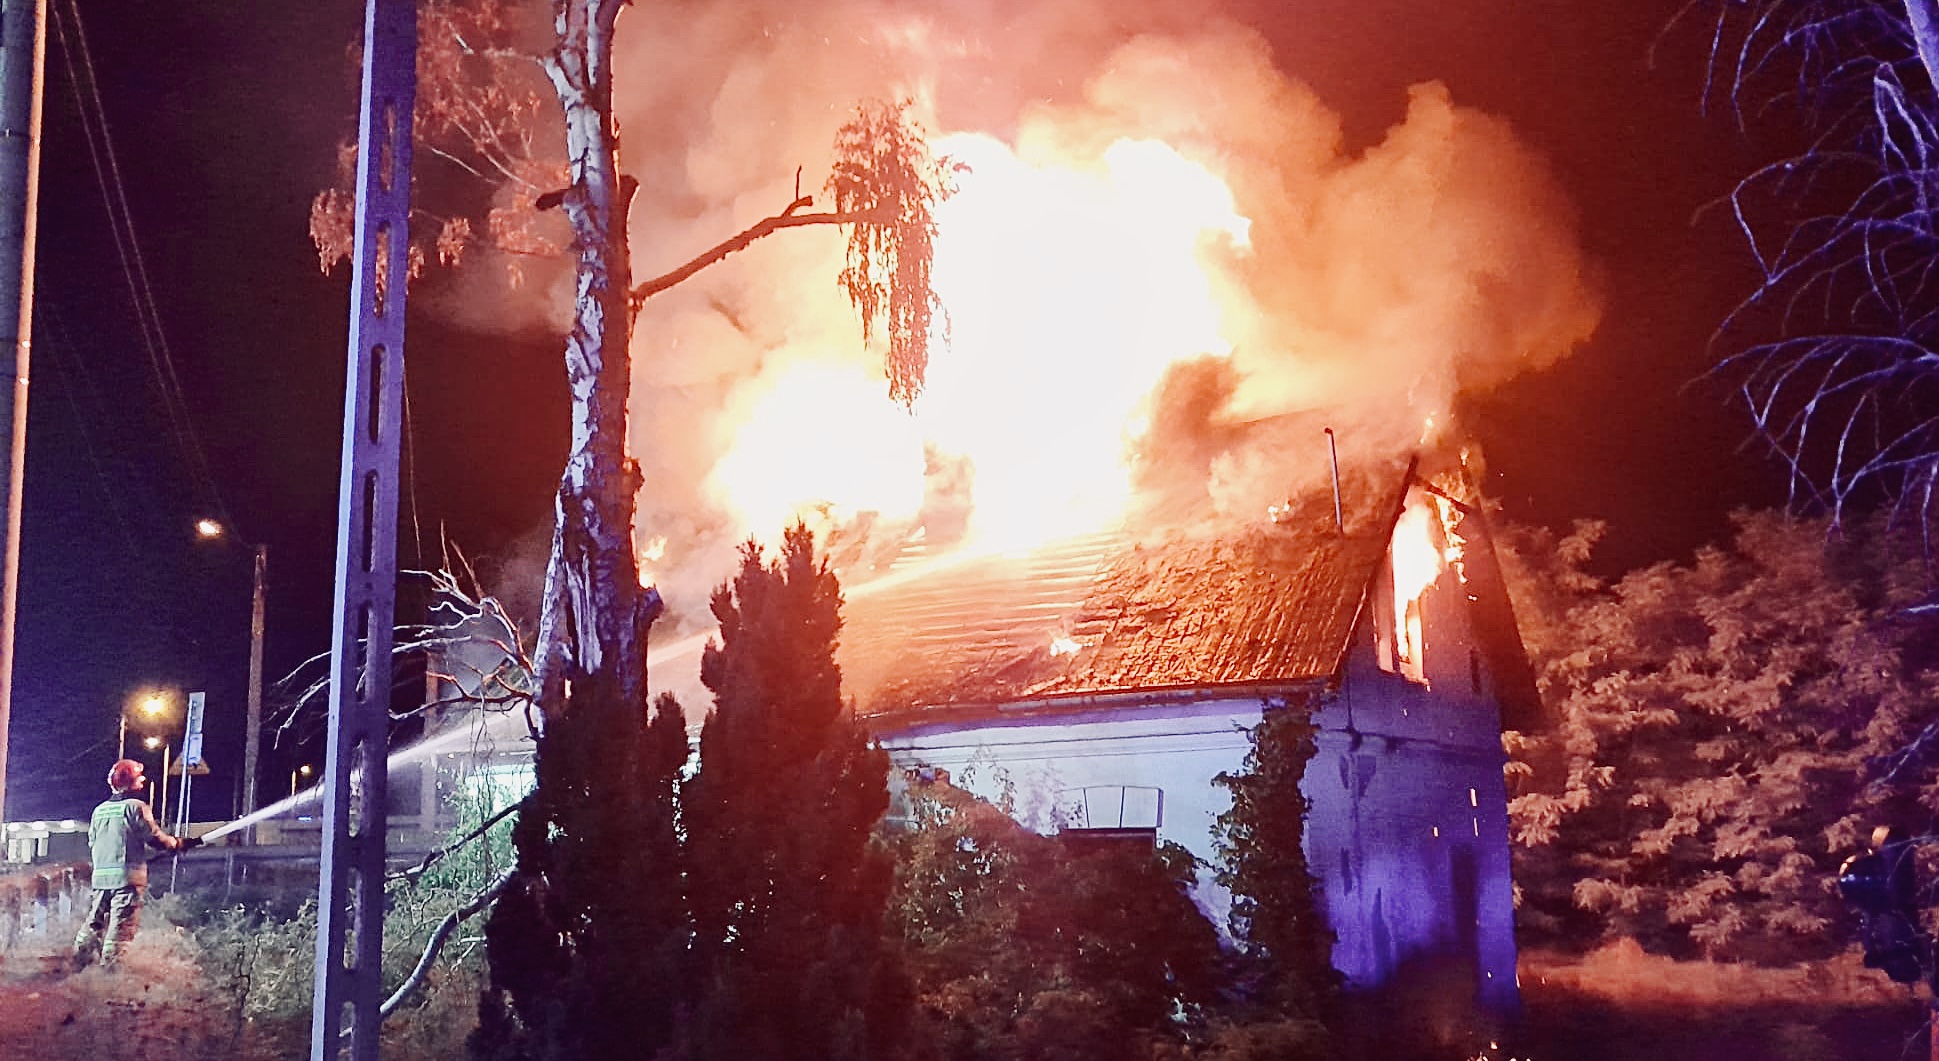 WOŁOMIN. Kolejny pożar domu przy ulicy Duczkowskiej. Tym razem spłonął cały dach budynku. 